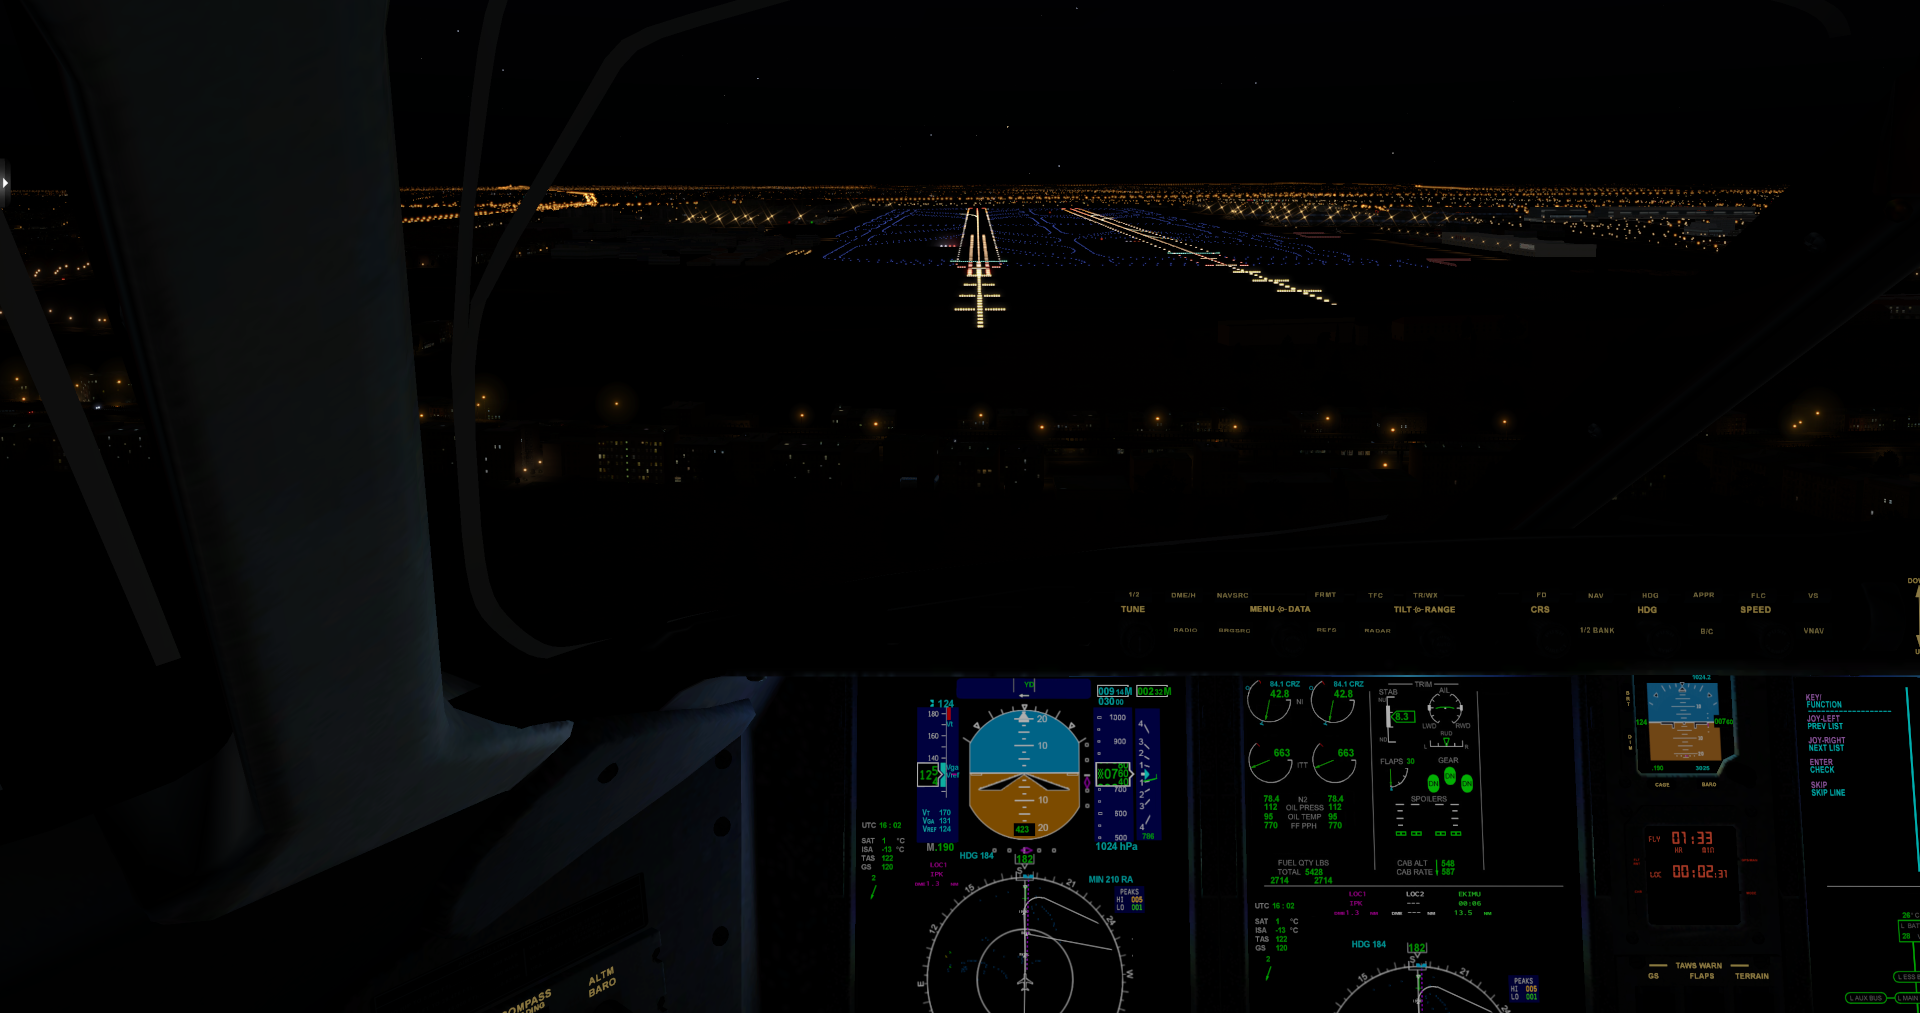 [XP11] 东海公务机 挑战者300 北京-上海虹桥，夜航-7618 